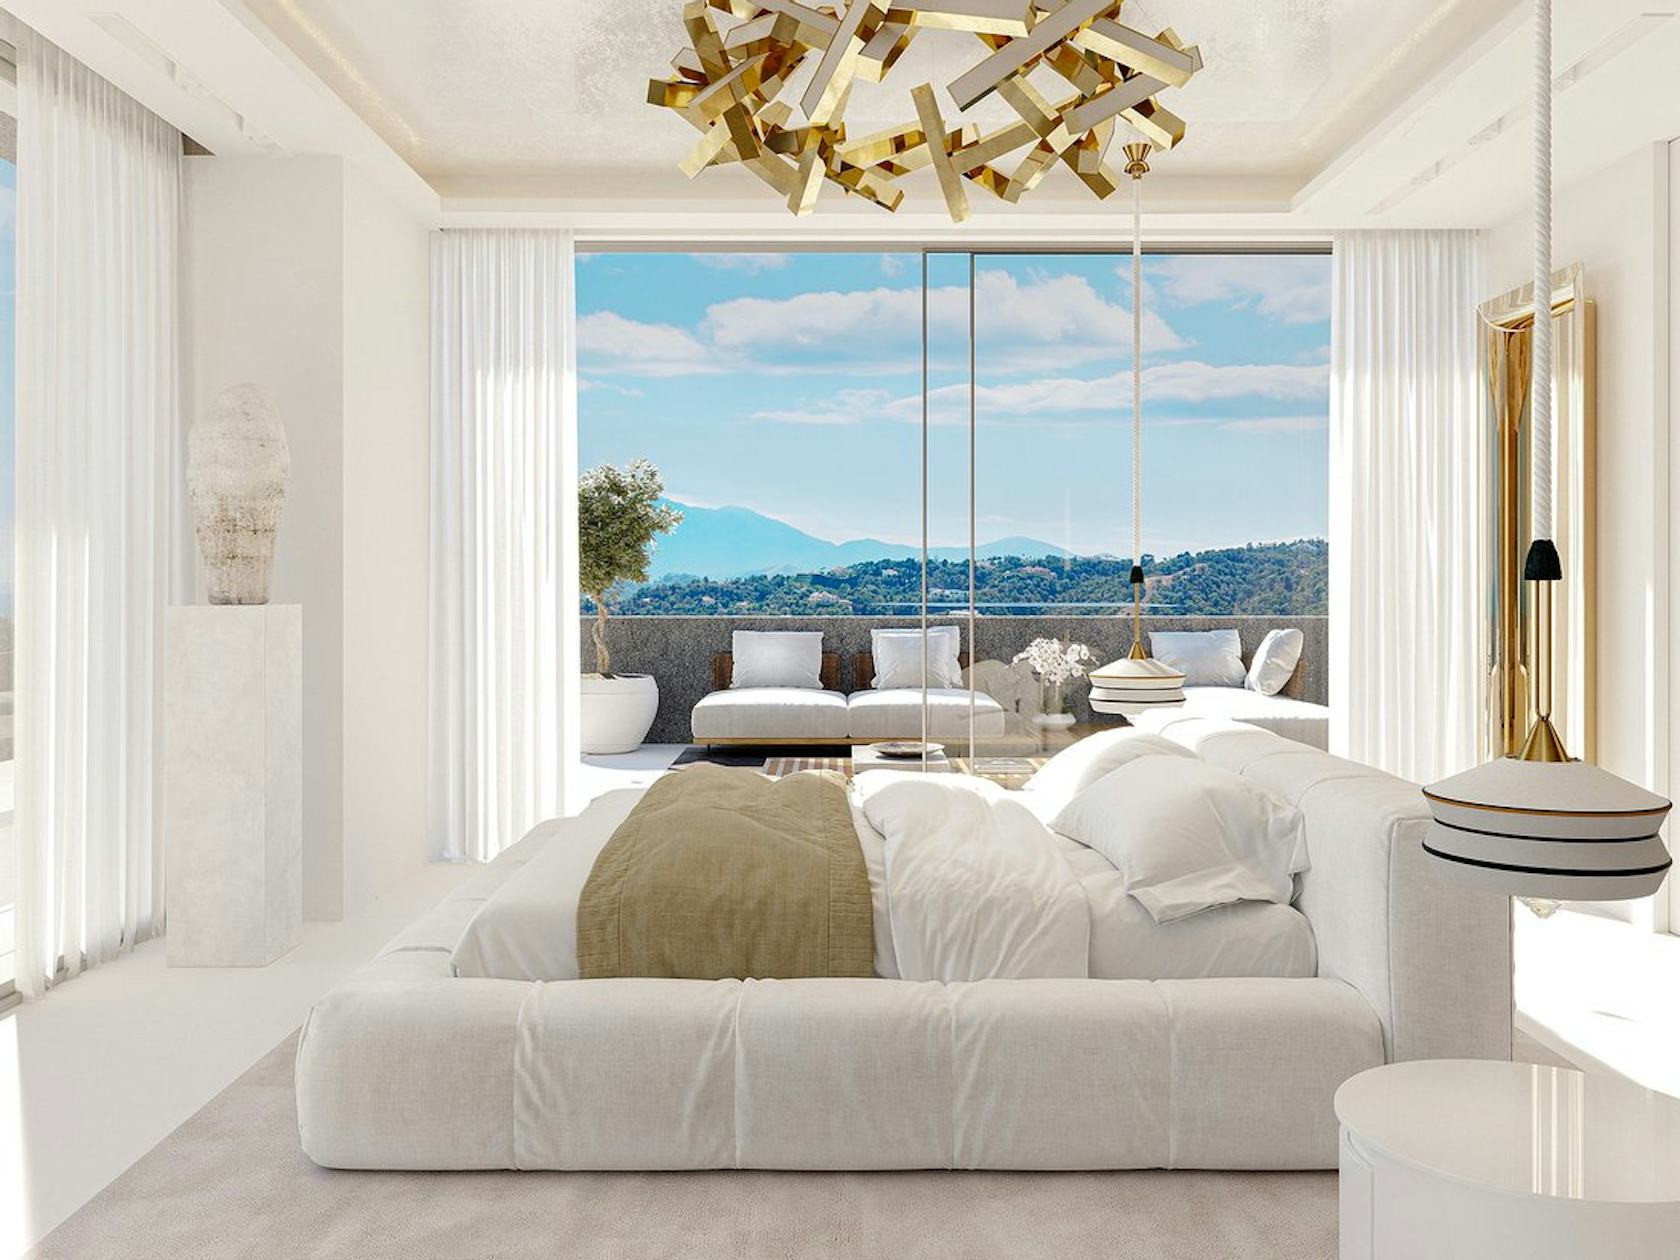 interior design indoors home decor couch furniture chandelier lamp window bedroom room